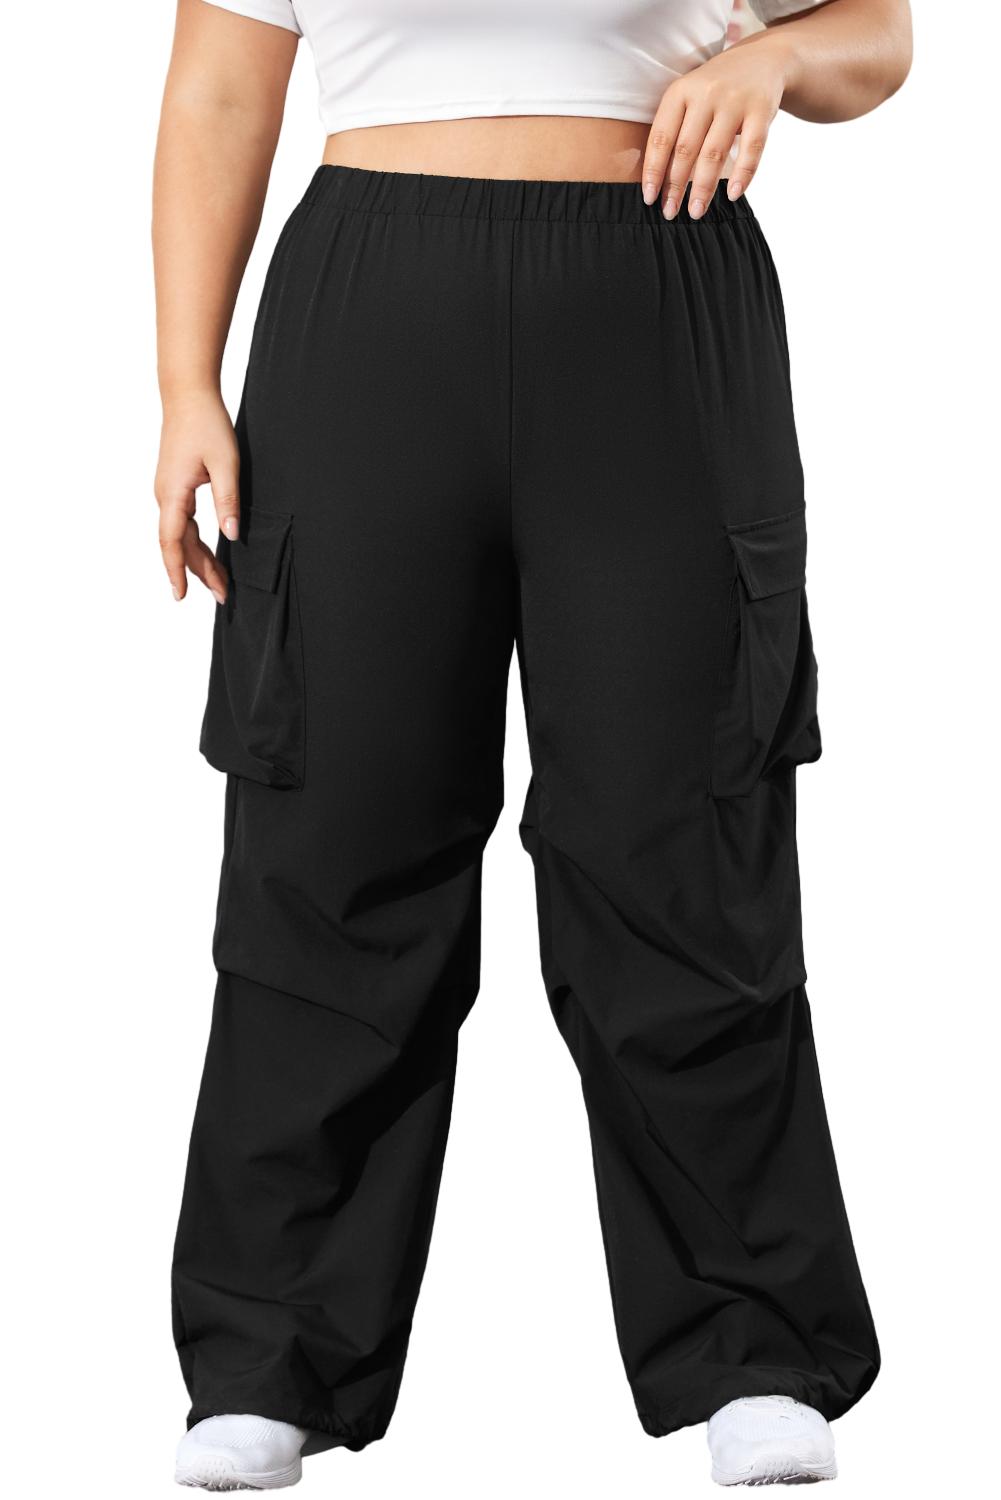 Black Plus Size Flap Pocket Elastic Waist Cargo Pants Plus Size Bottoms JT's Designer Fashion